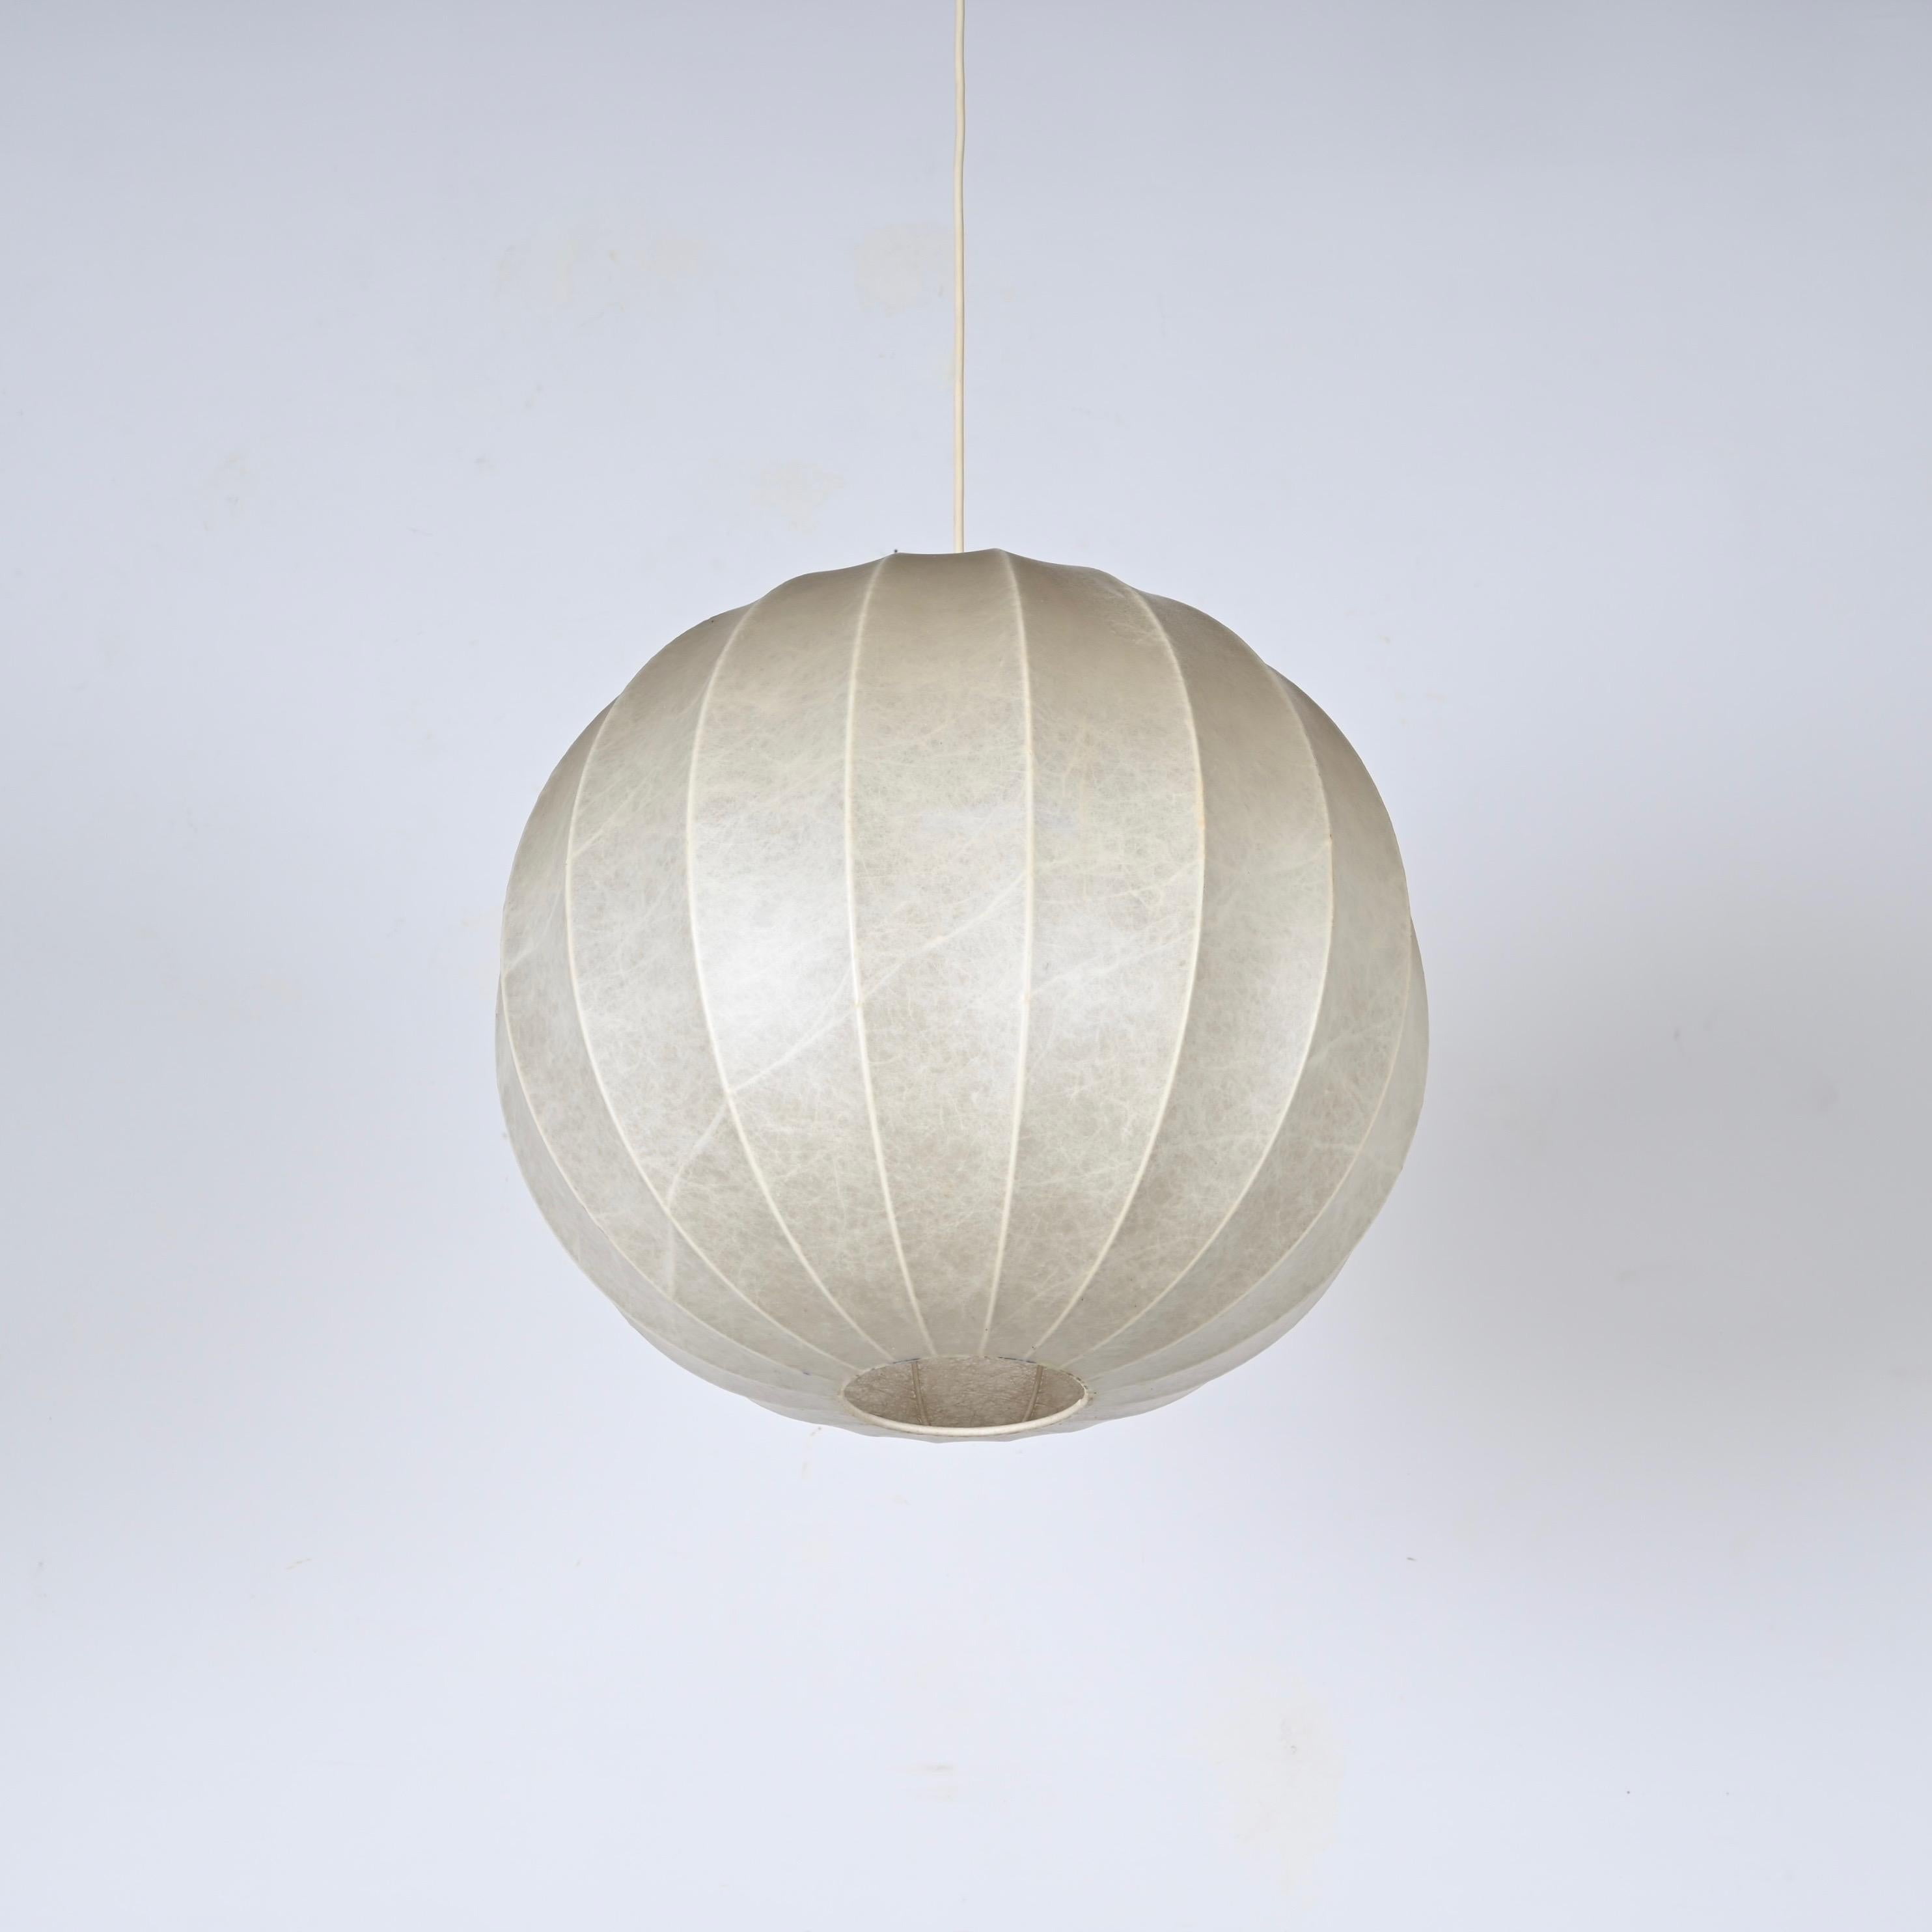 Wunderschöner großer 'Cocoon'-Anhänger. Diese schöne Lampe wurde in den 1960er Jahren von Achille Castiglioni in Italien entworfen.

Dieses ikonische Stück hat einen runden Lampenschirm aus natürlichem, weichem Harz mit einer fantastischen Farbe.